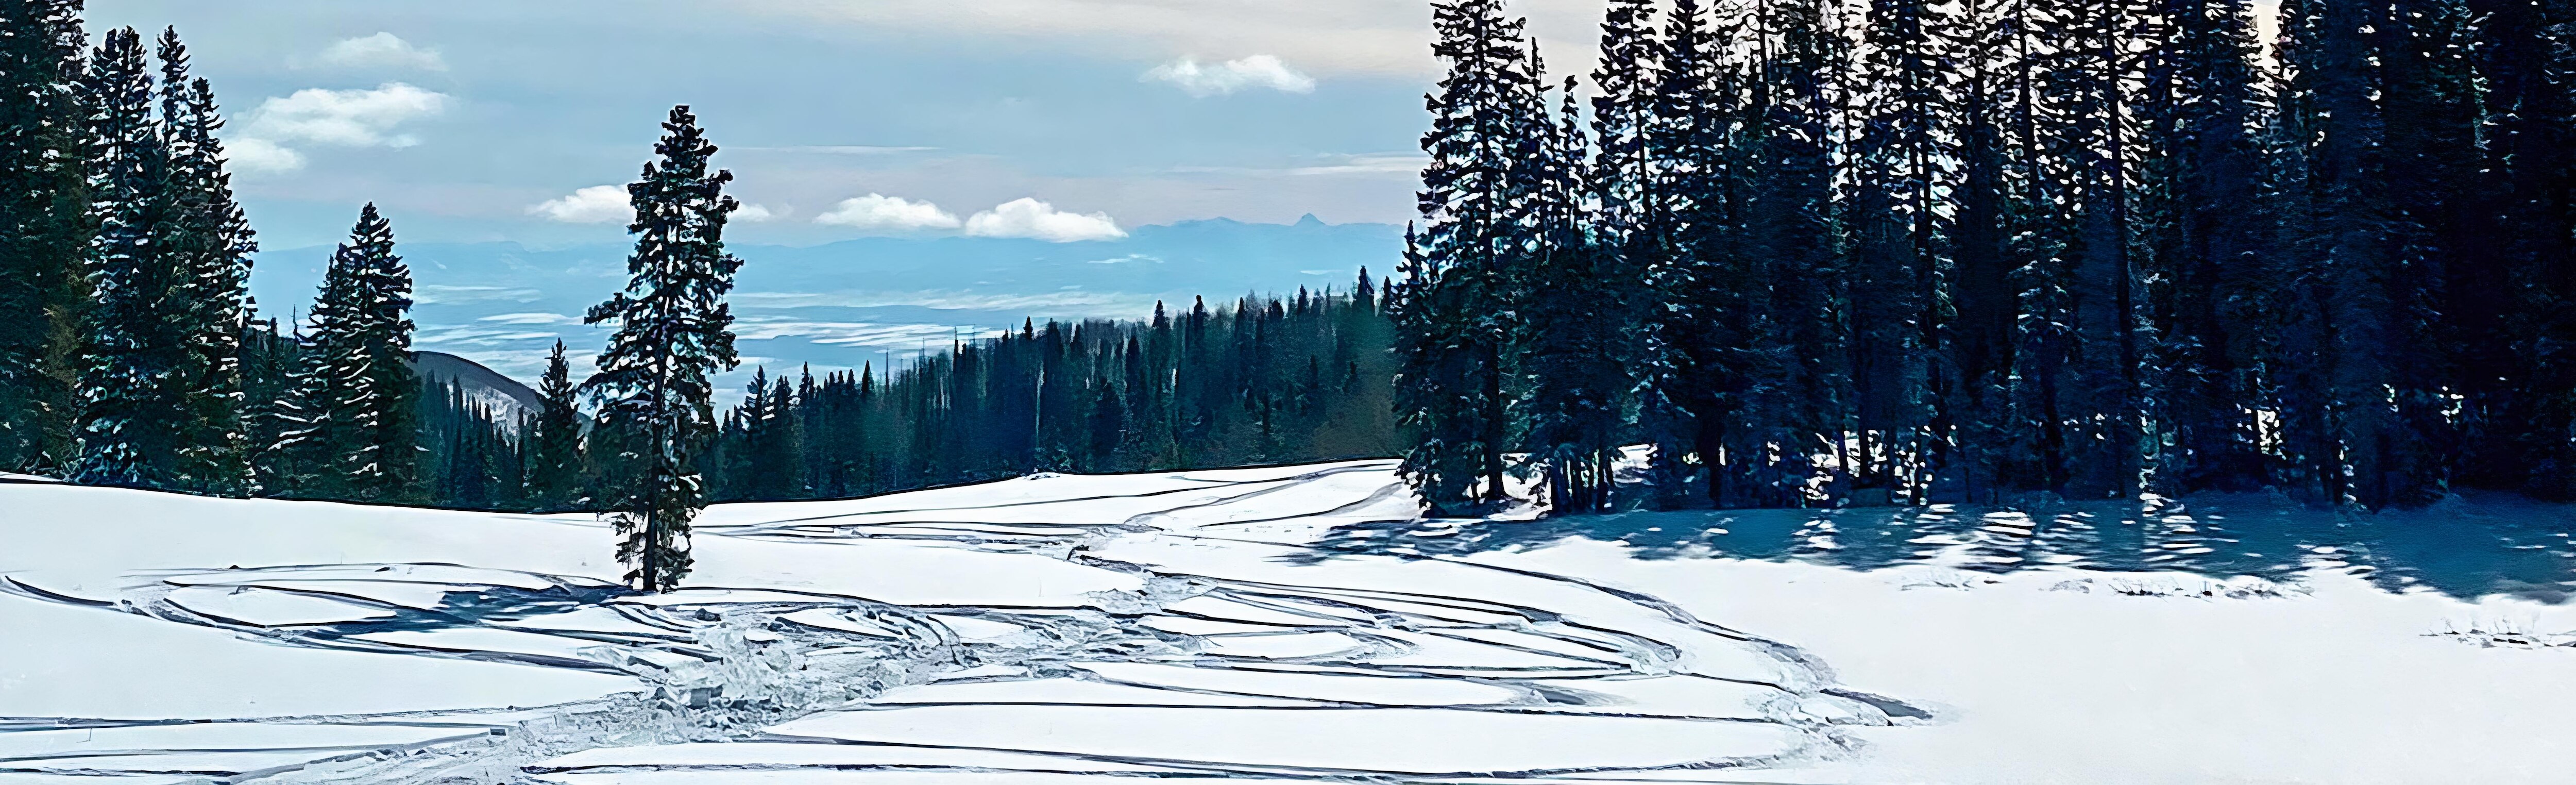 Ski-Doo snowmobile tracks in the snow